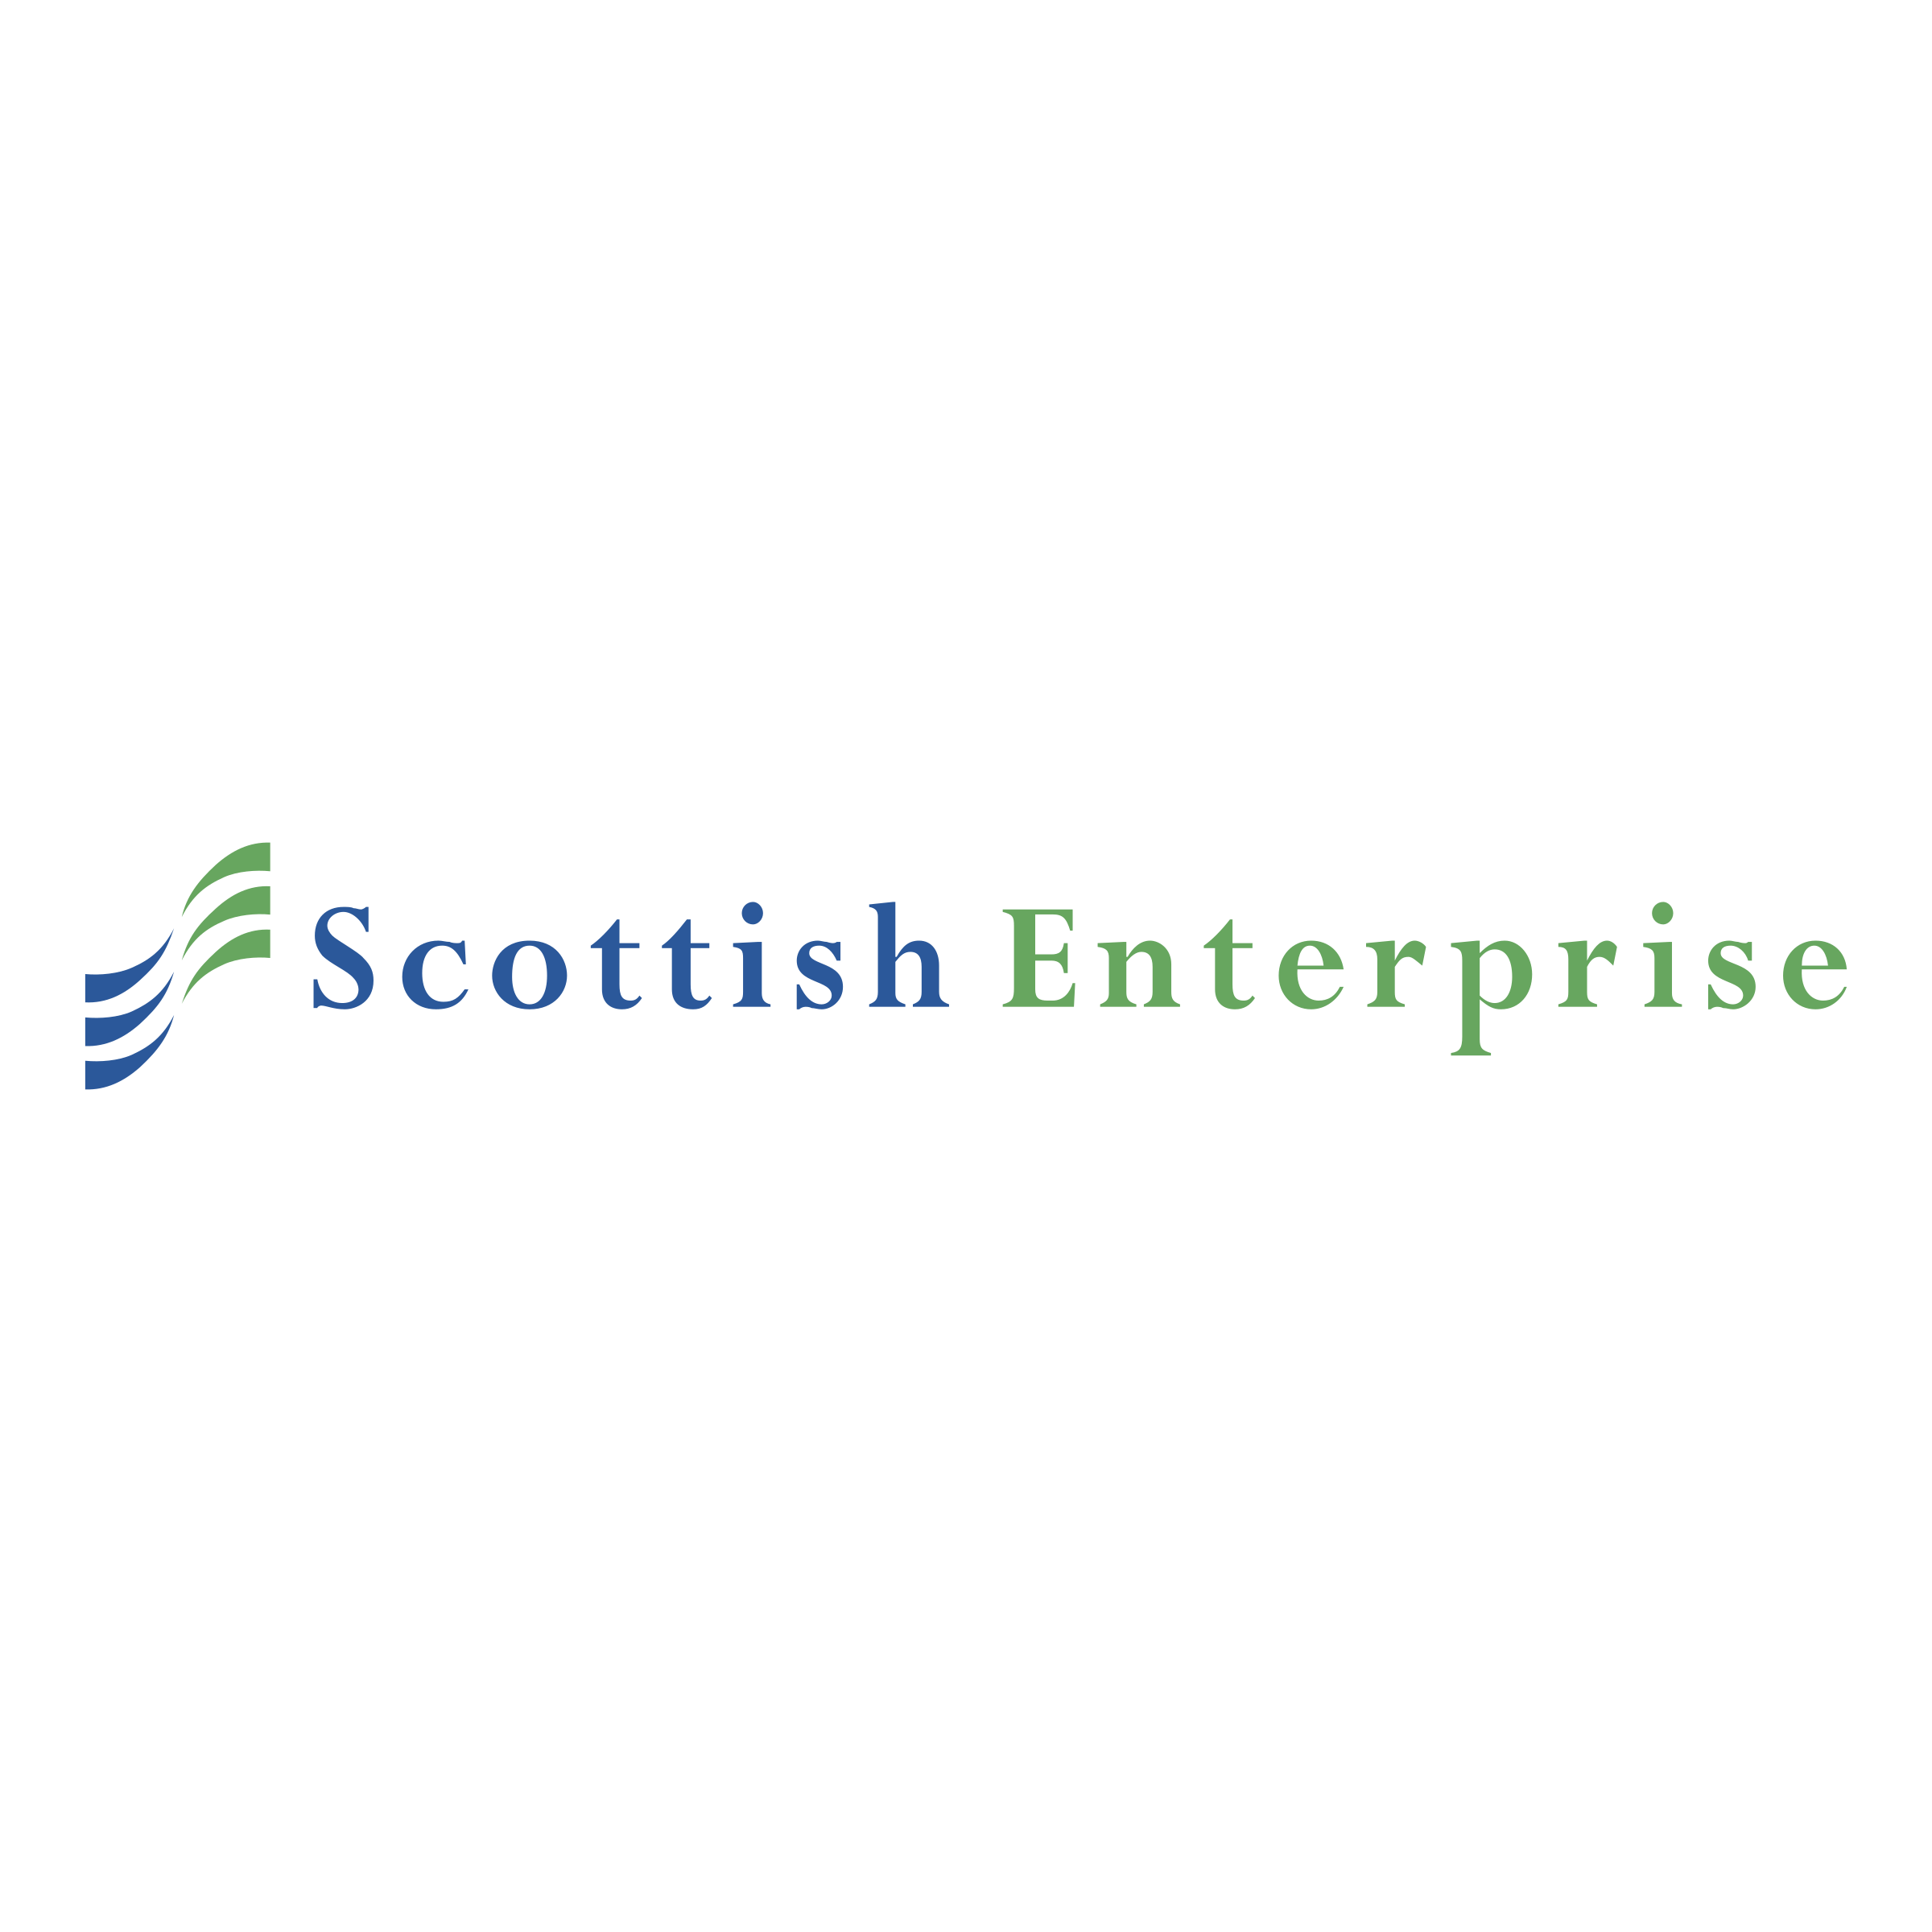 scottish-enterprise-logo-png-transparent.png